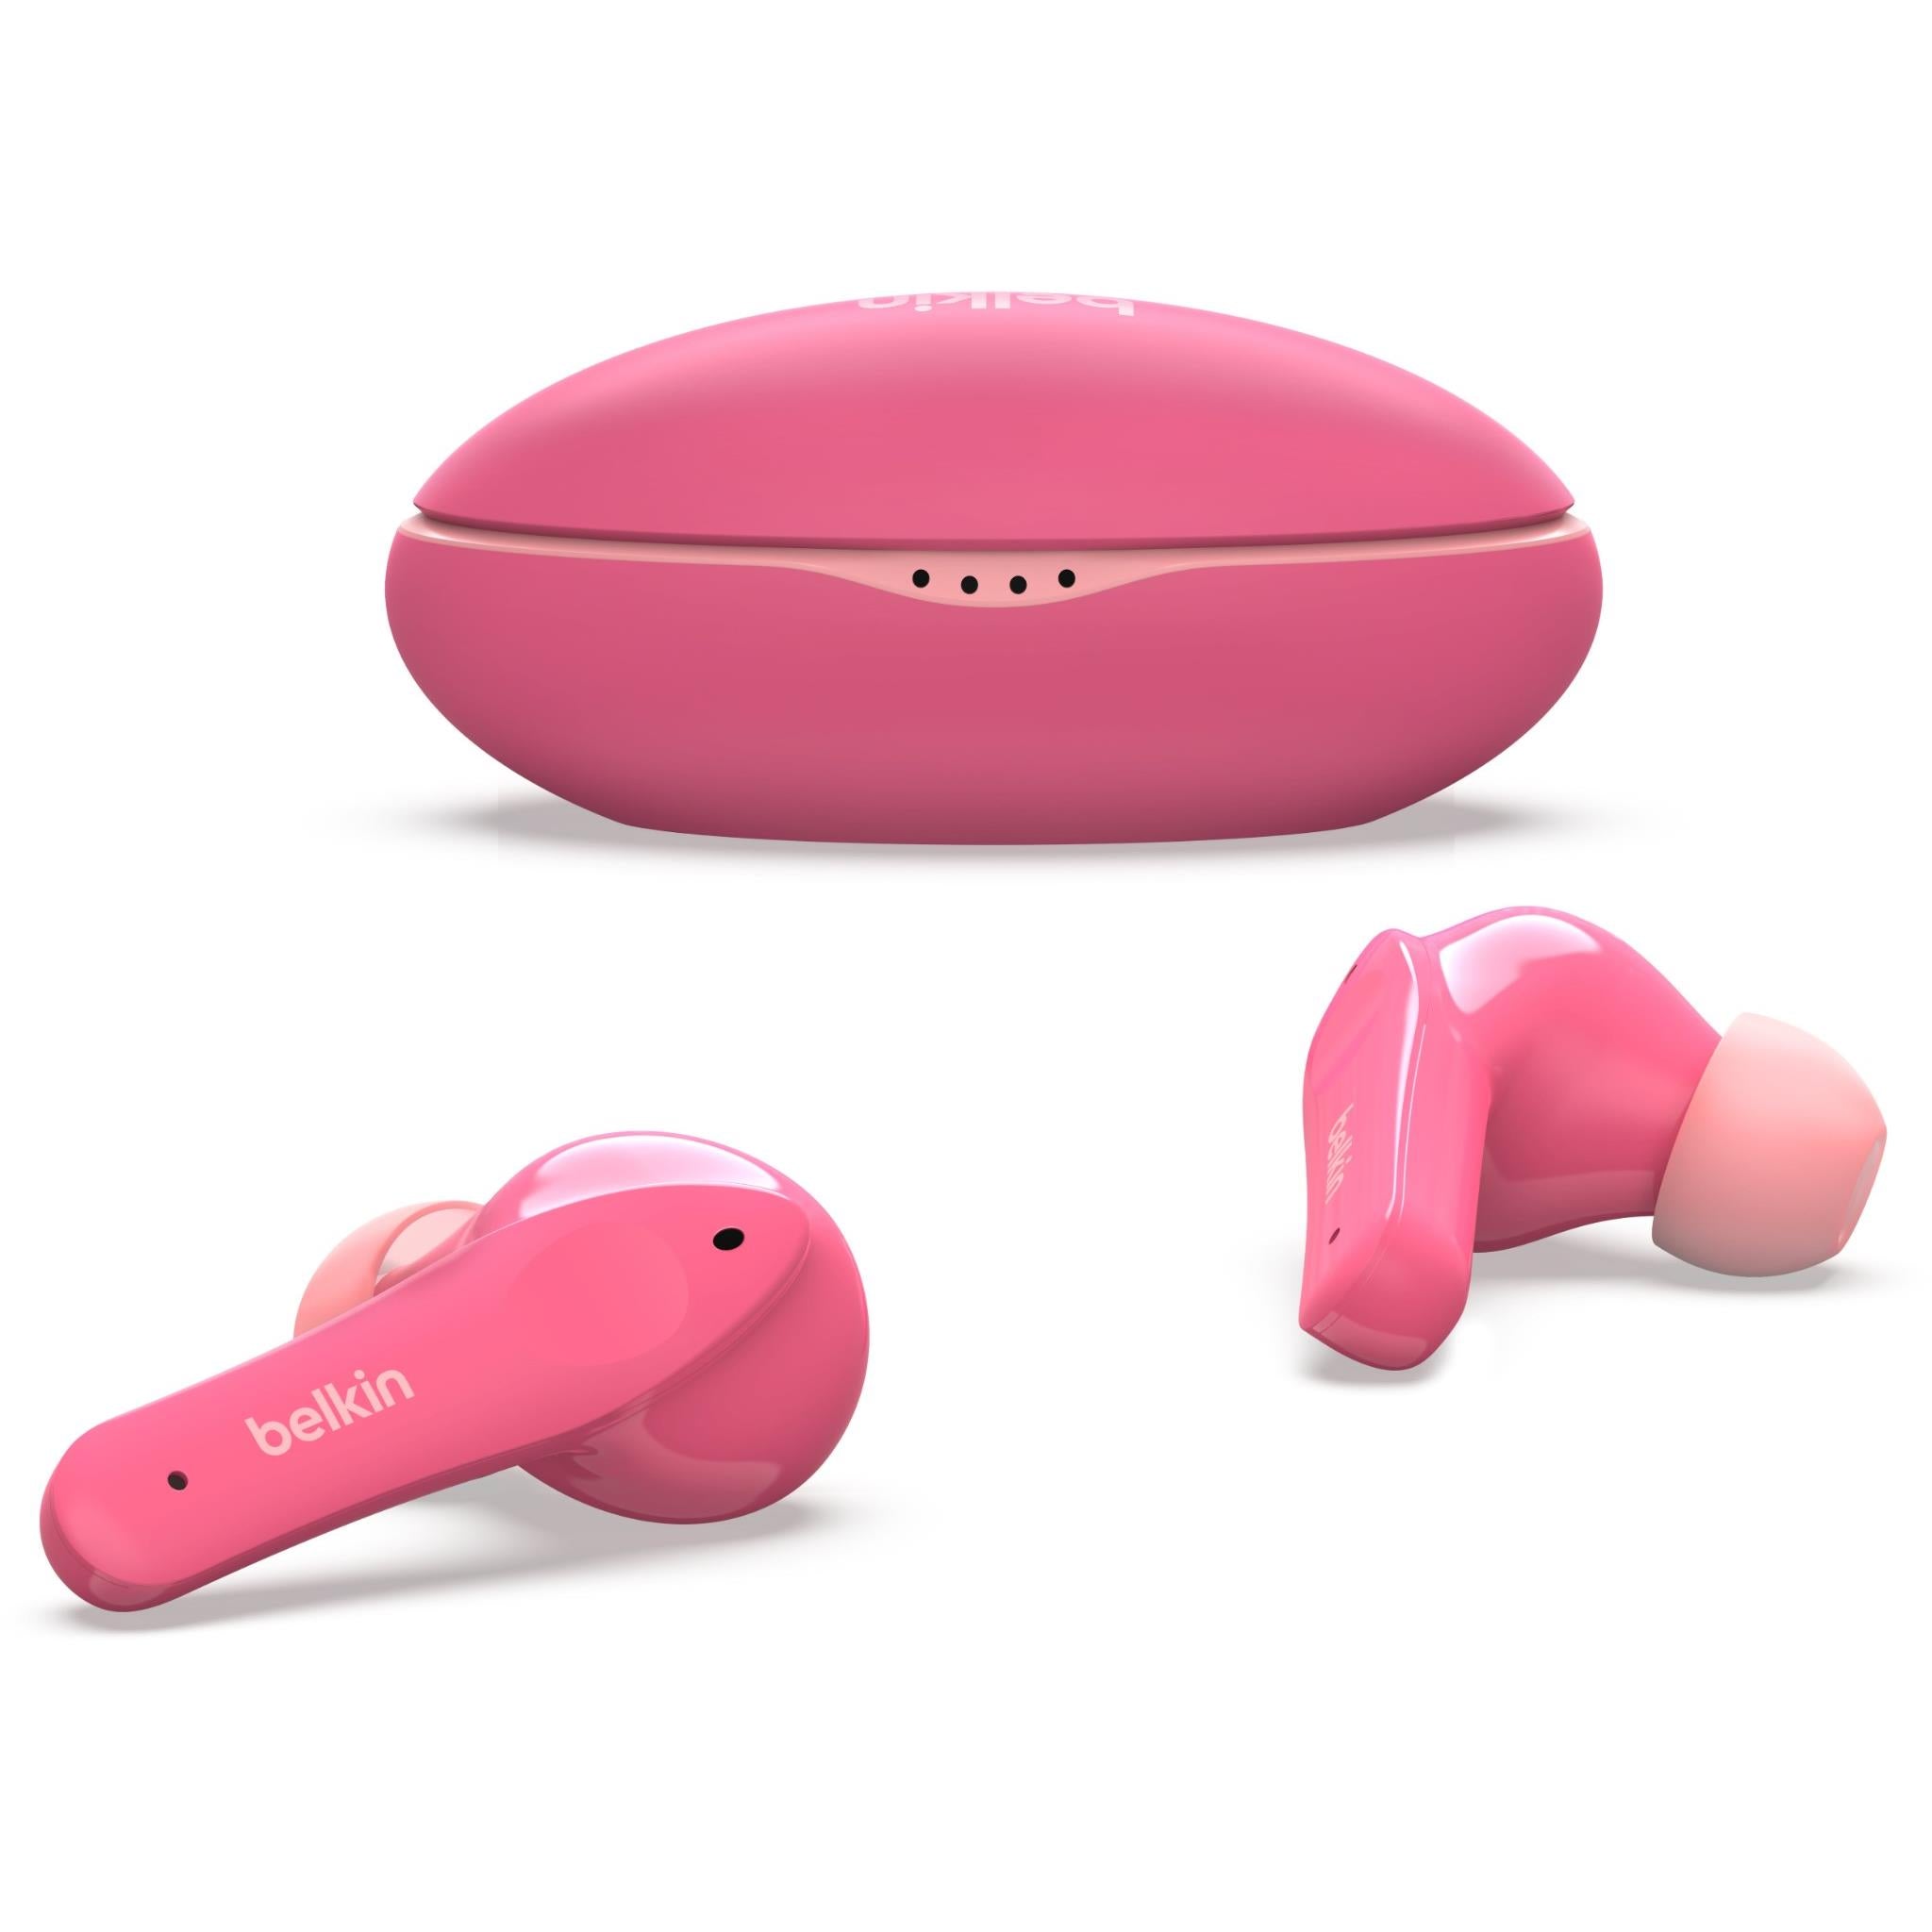 belkin soundform nano true wireless in-ear headphones for kids (pink)